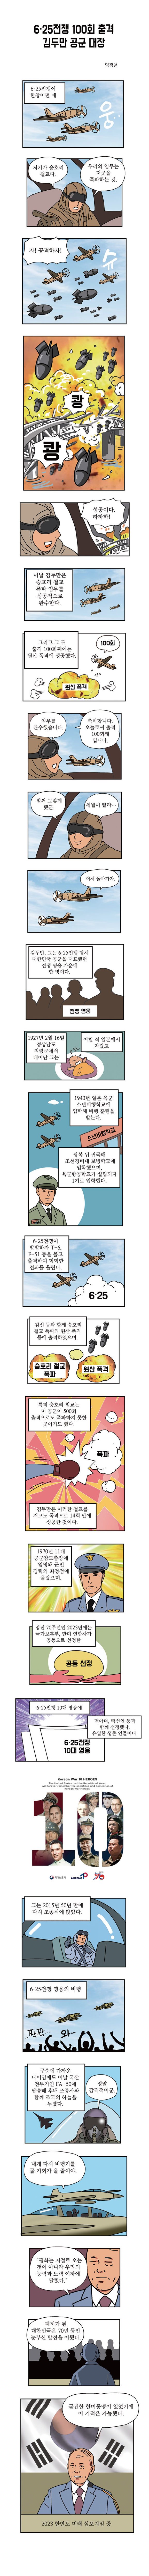 6·25전쟁 100회 출격 김두만 공군 대장